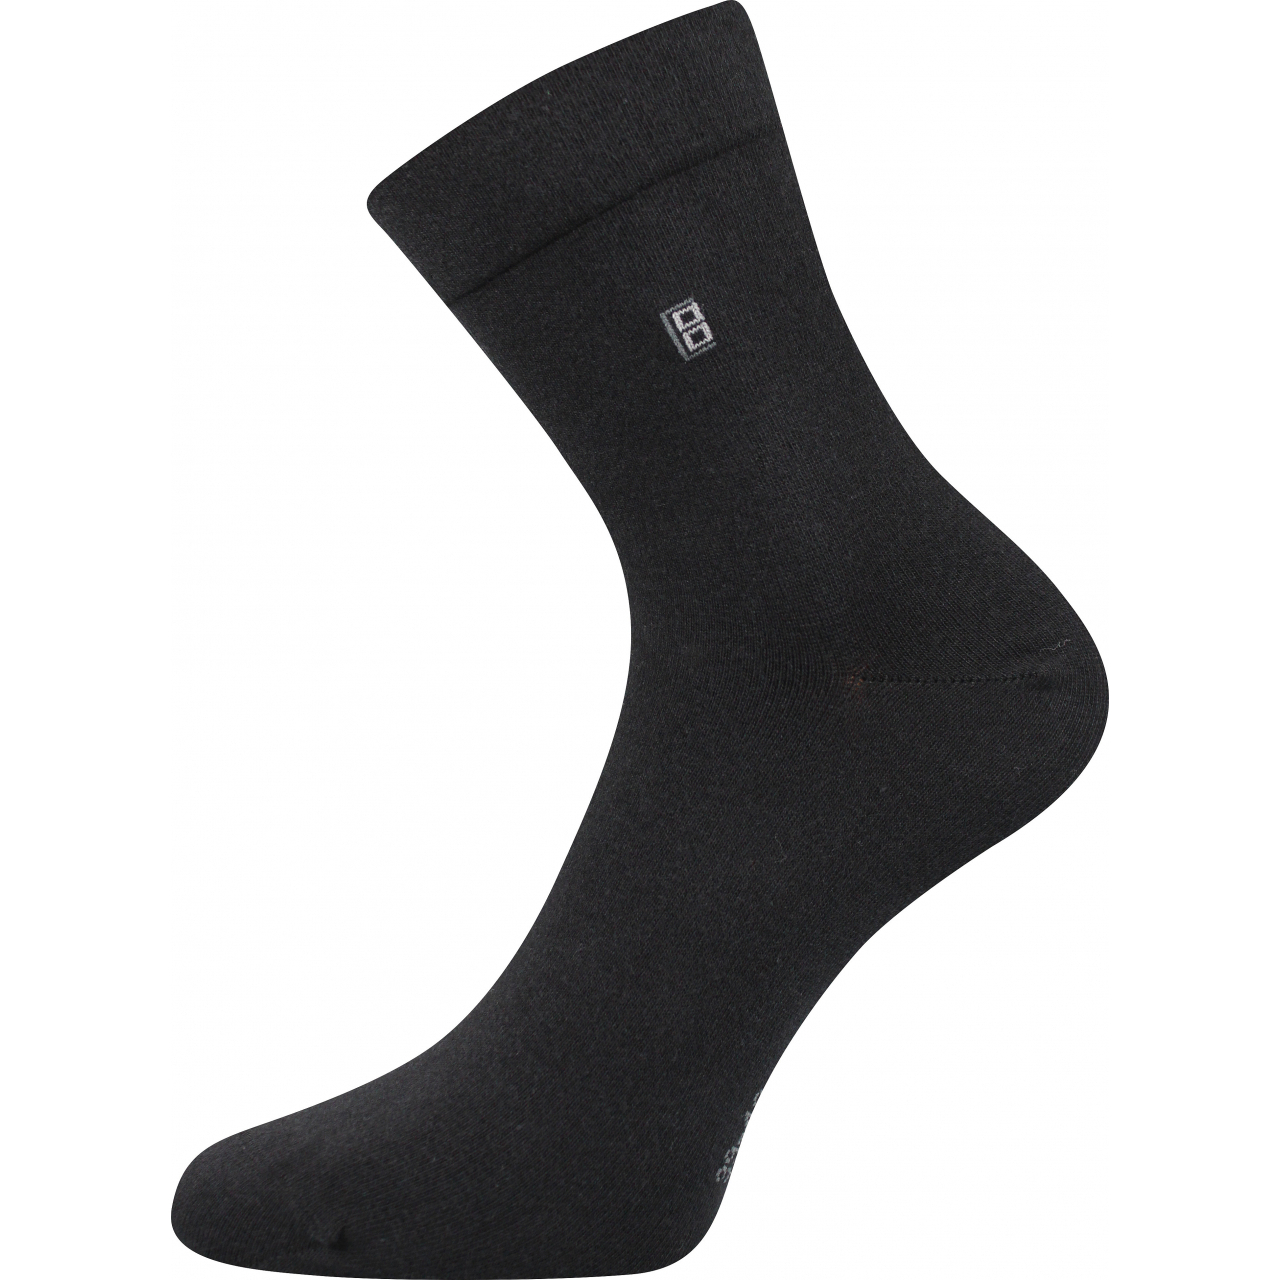 Ponožky pánské společenské Lonka Dagles - černé, 39-42